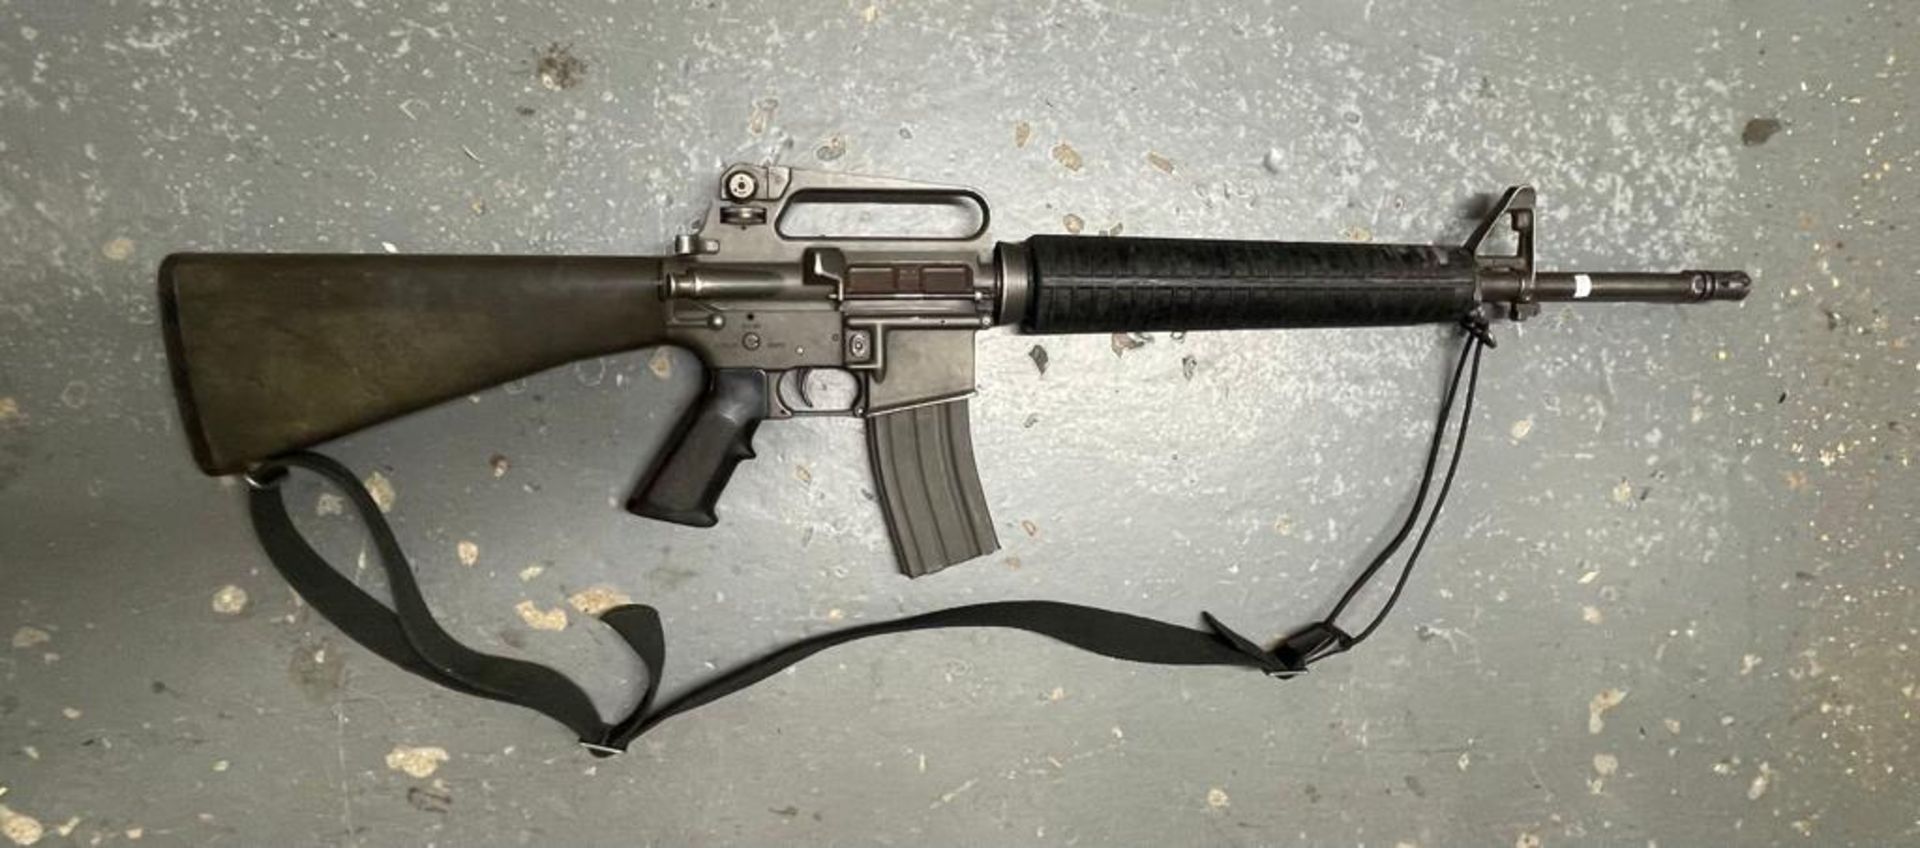 A deactivated M16A2 assault rifle.